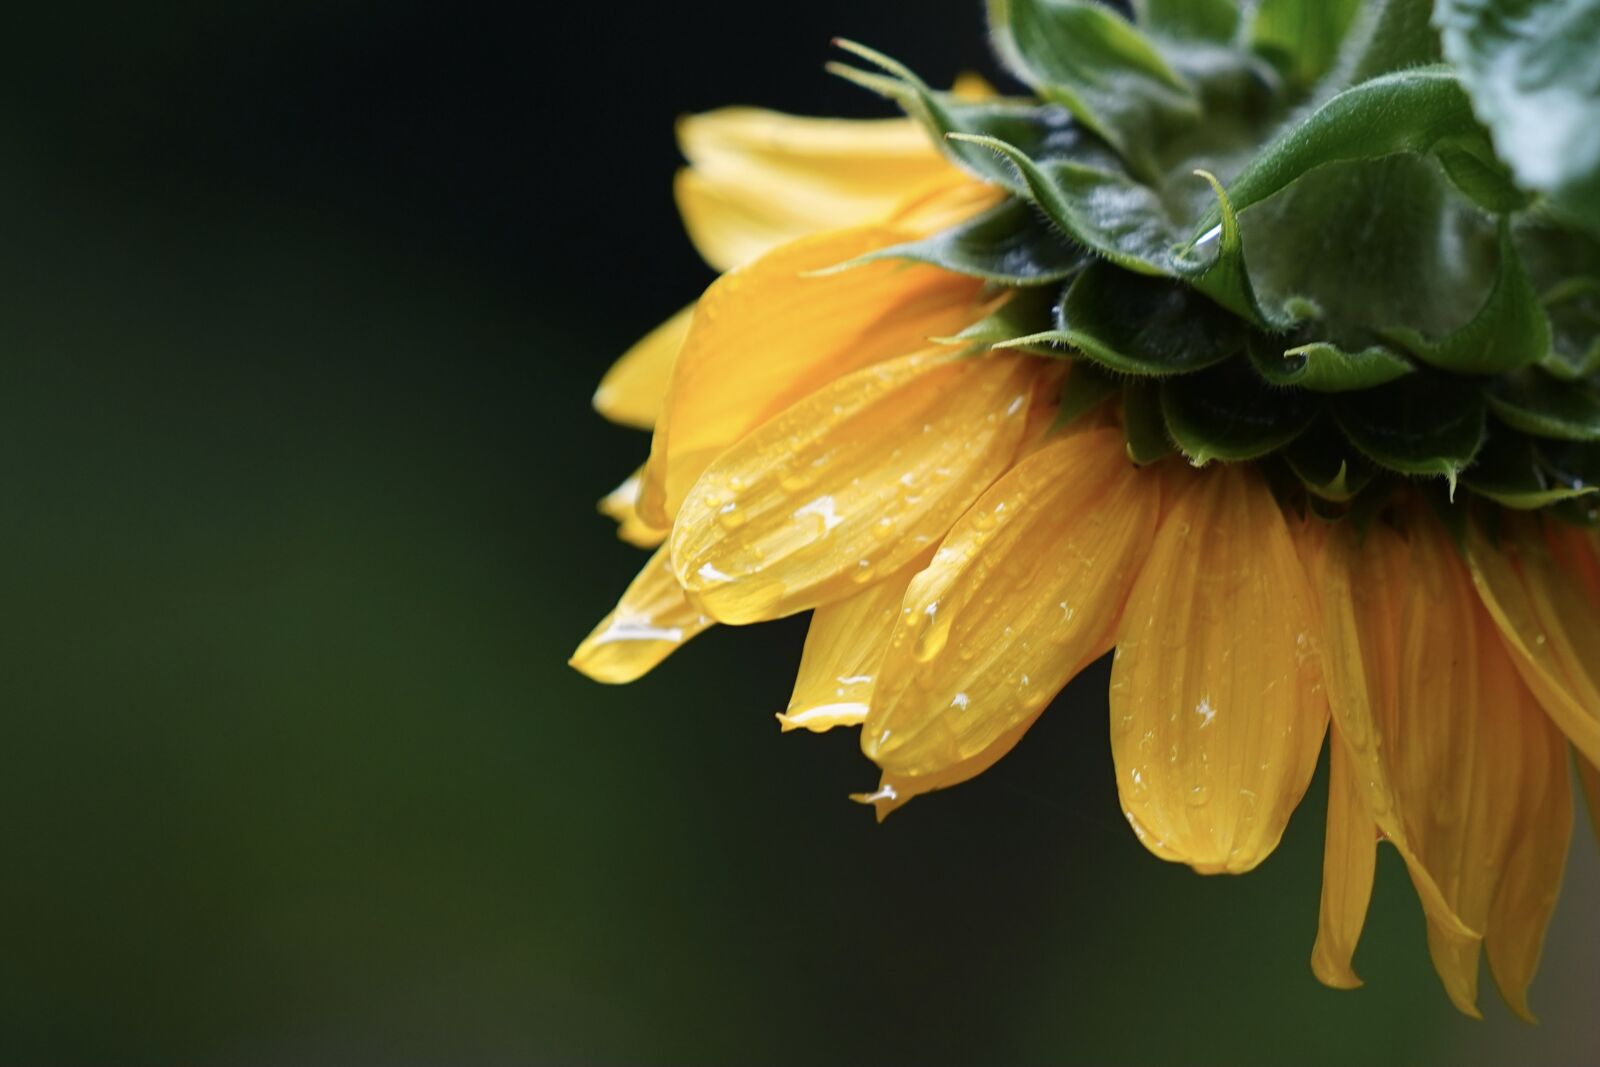 Sony FE 70-200mm F4 G OSS sample photo. Sunflower, flower, blossom photography